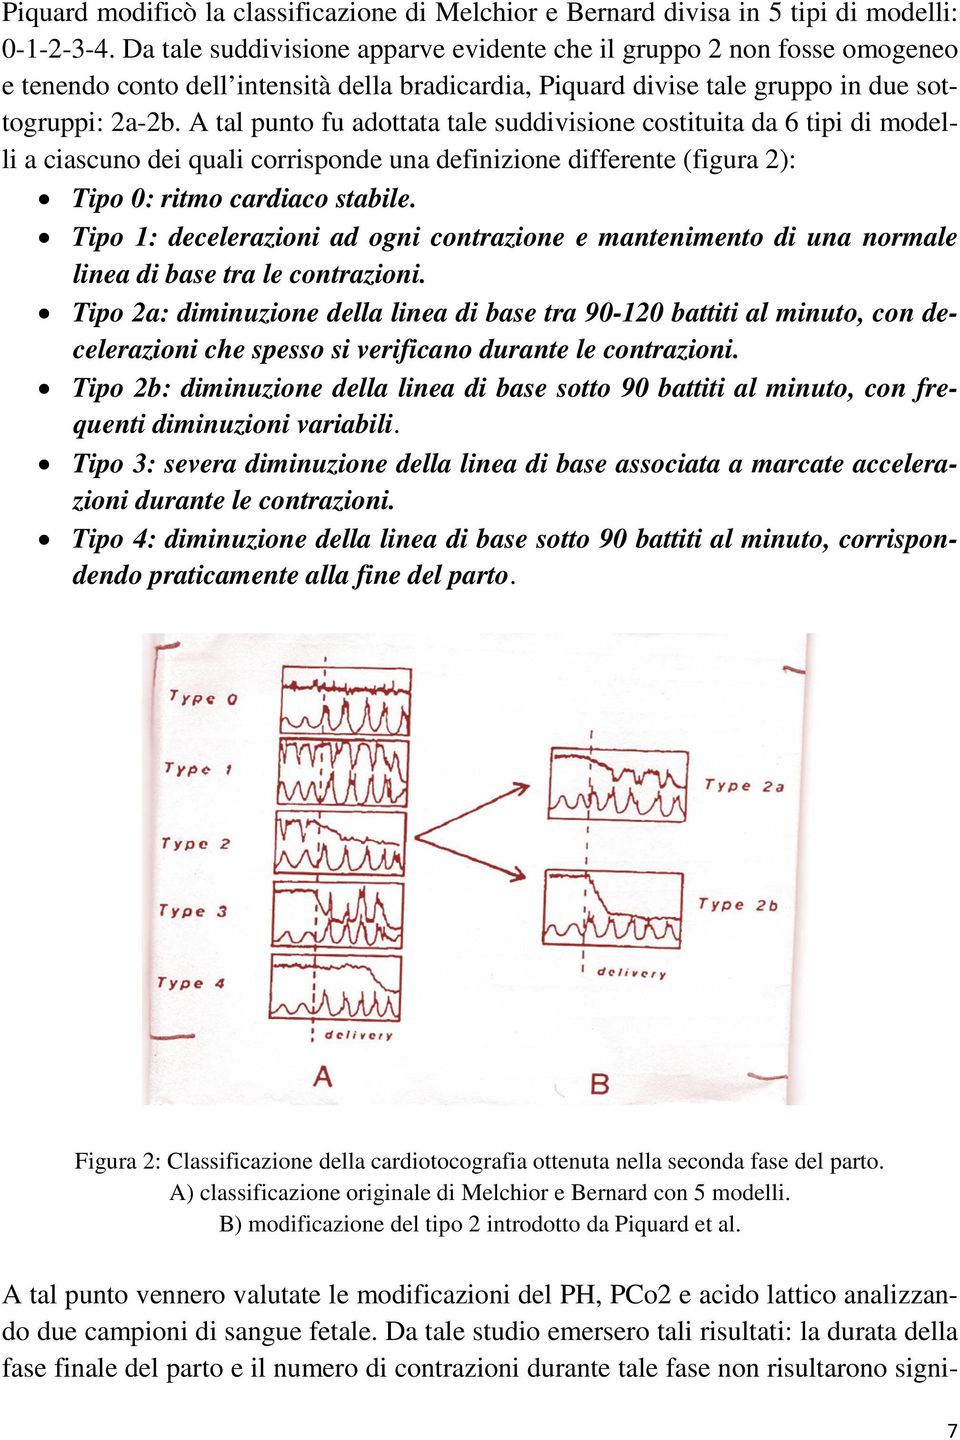 A tal punto fu adottata tale suddivisione costituita da 6 tipi di modelli a ciascuno dei quali corrisponde una definizione differente (figura 2): Tipo 0: ritmo cardiaco stabile.